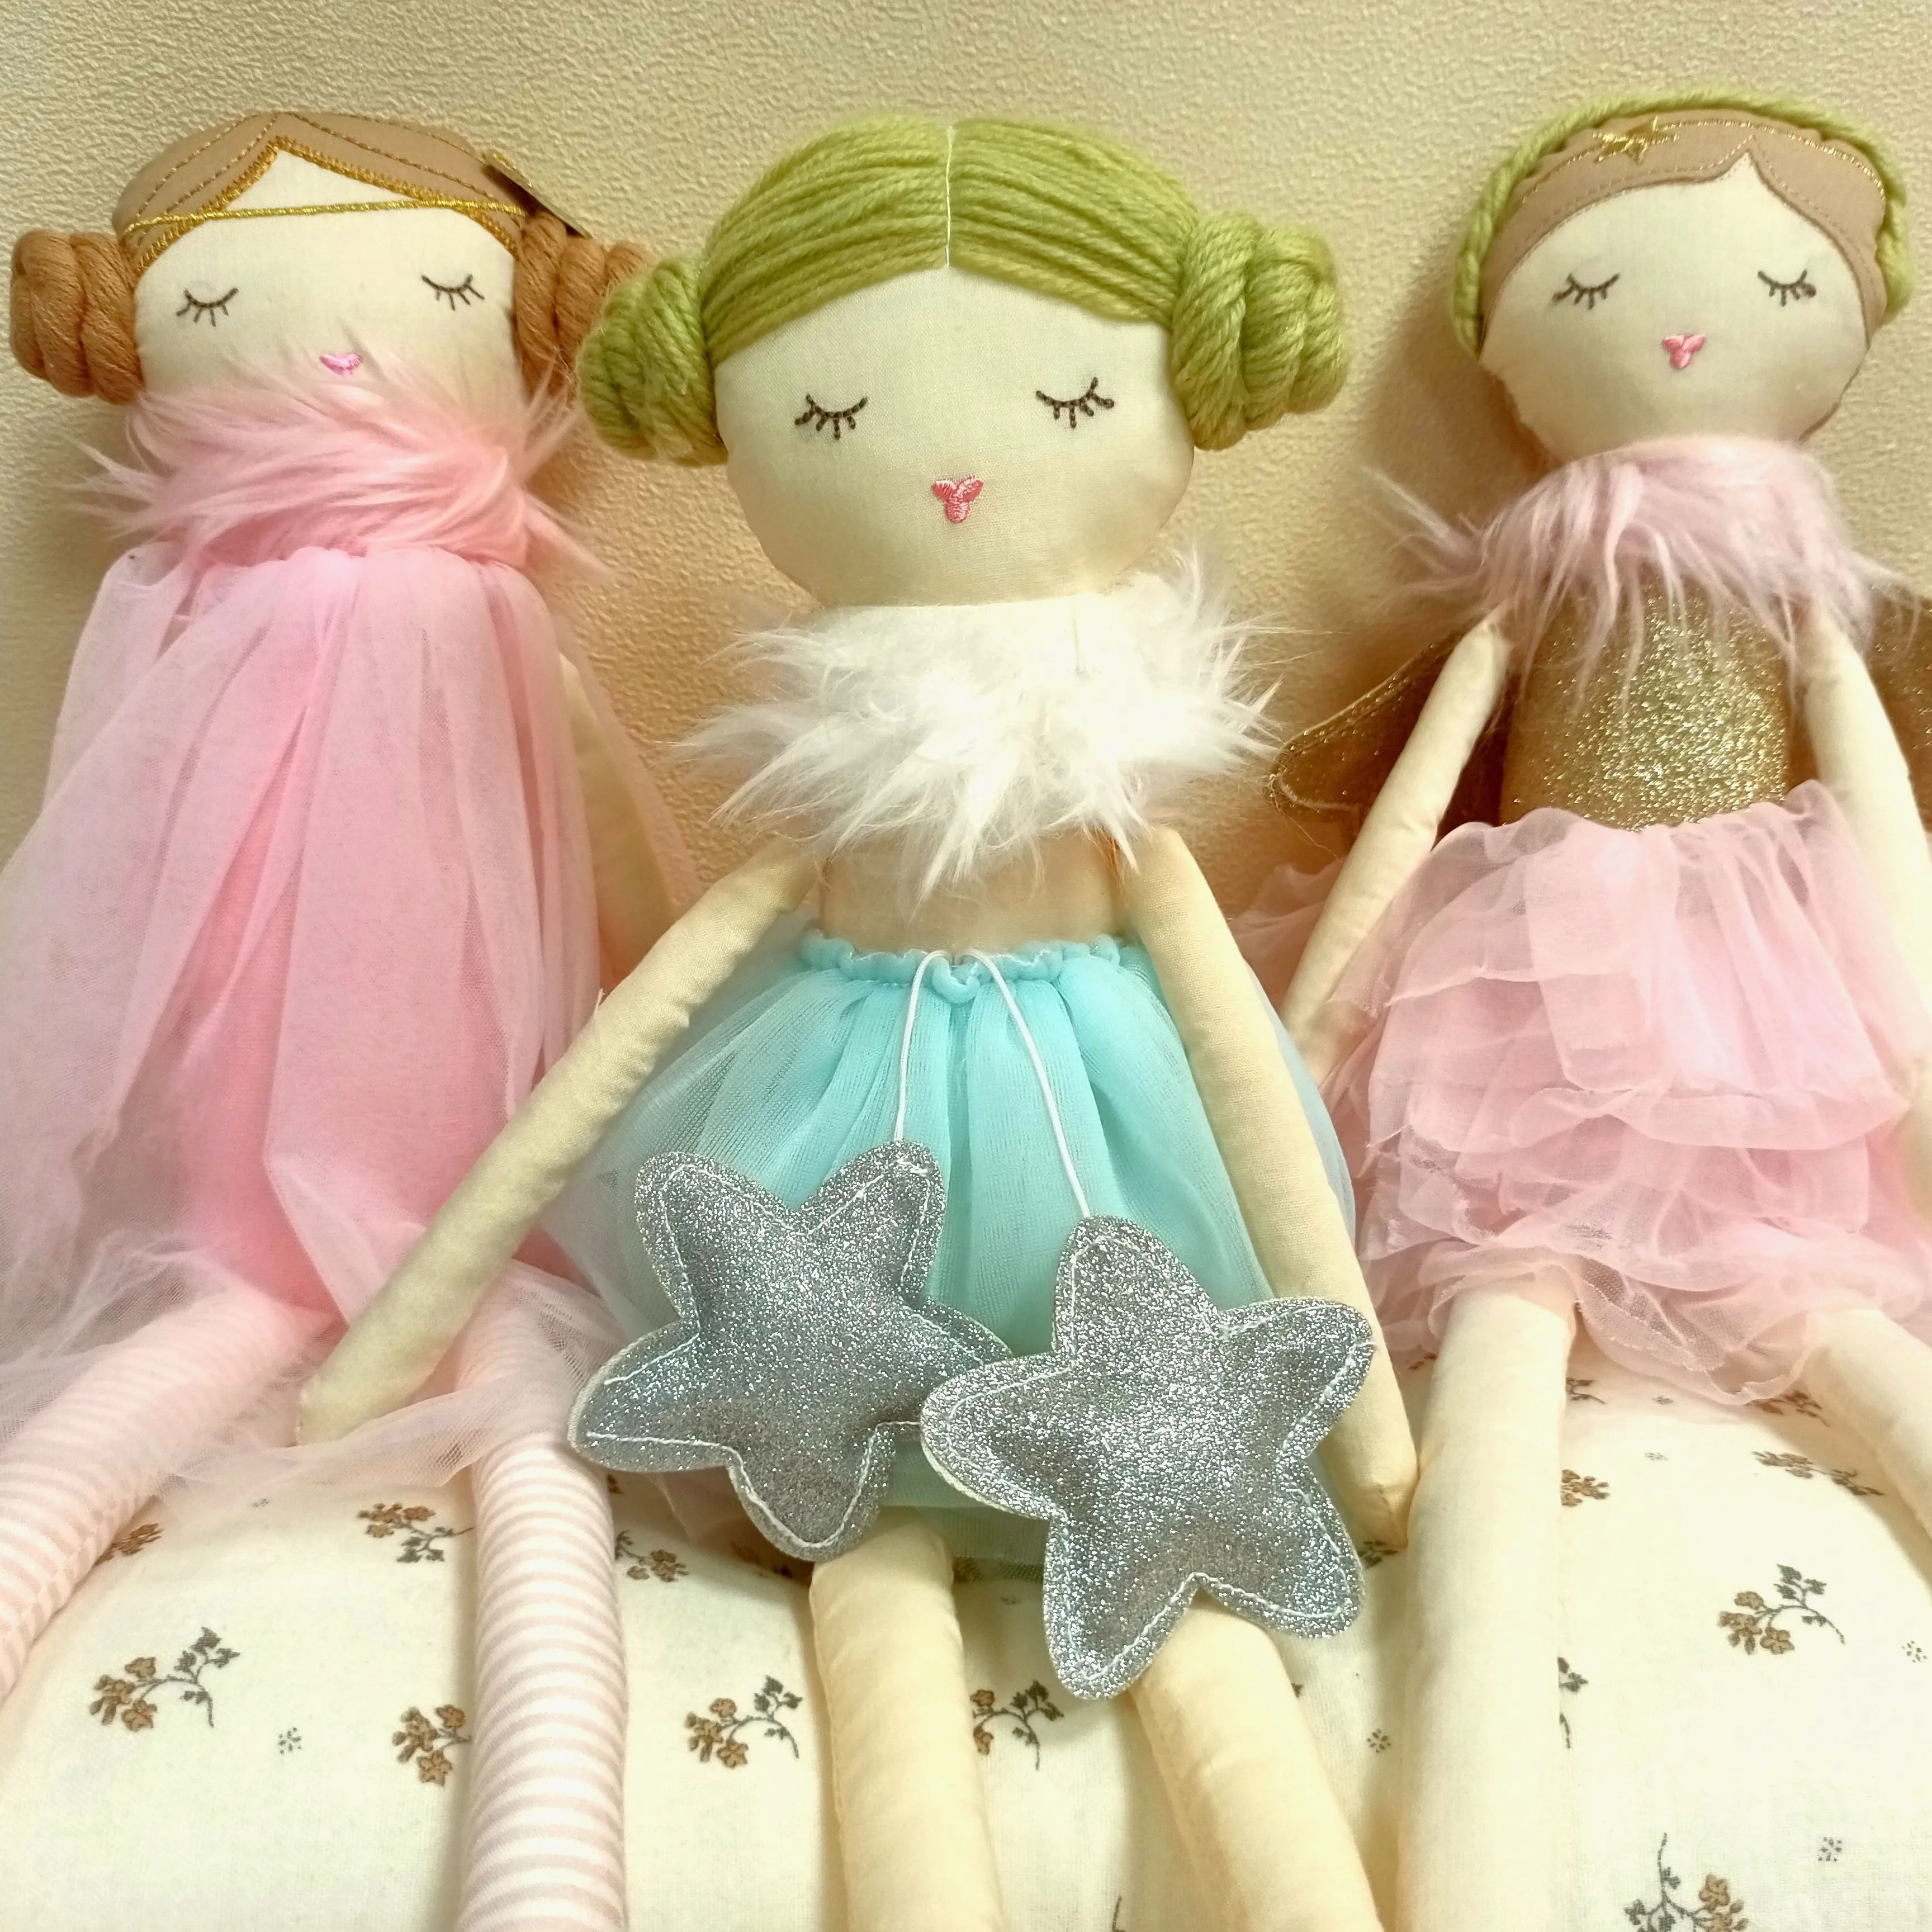 Оптовая продажа, бестселлер, балерина, набор плюшевых кукол для балетной принцессы, девочка, кукла, мягкая детская игрушка для подарка или фотосъемки, декор комнаты